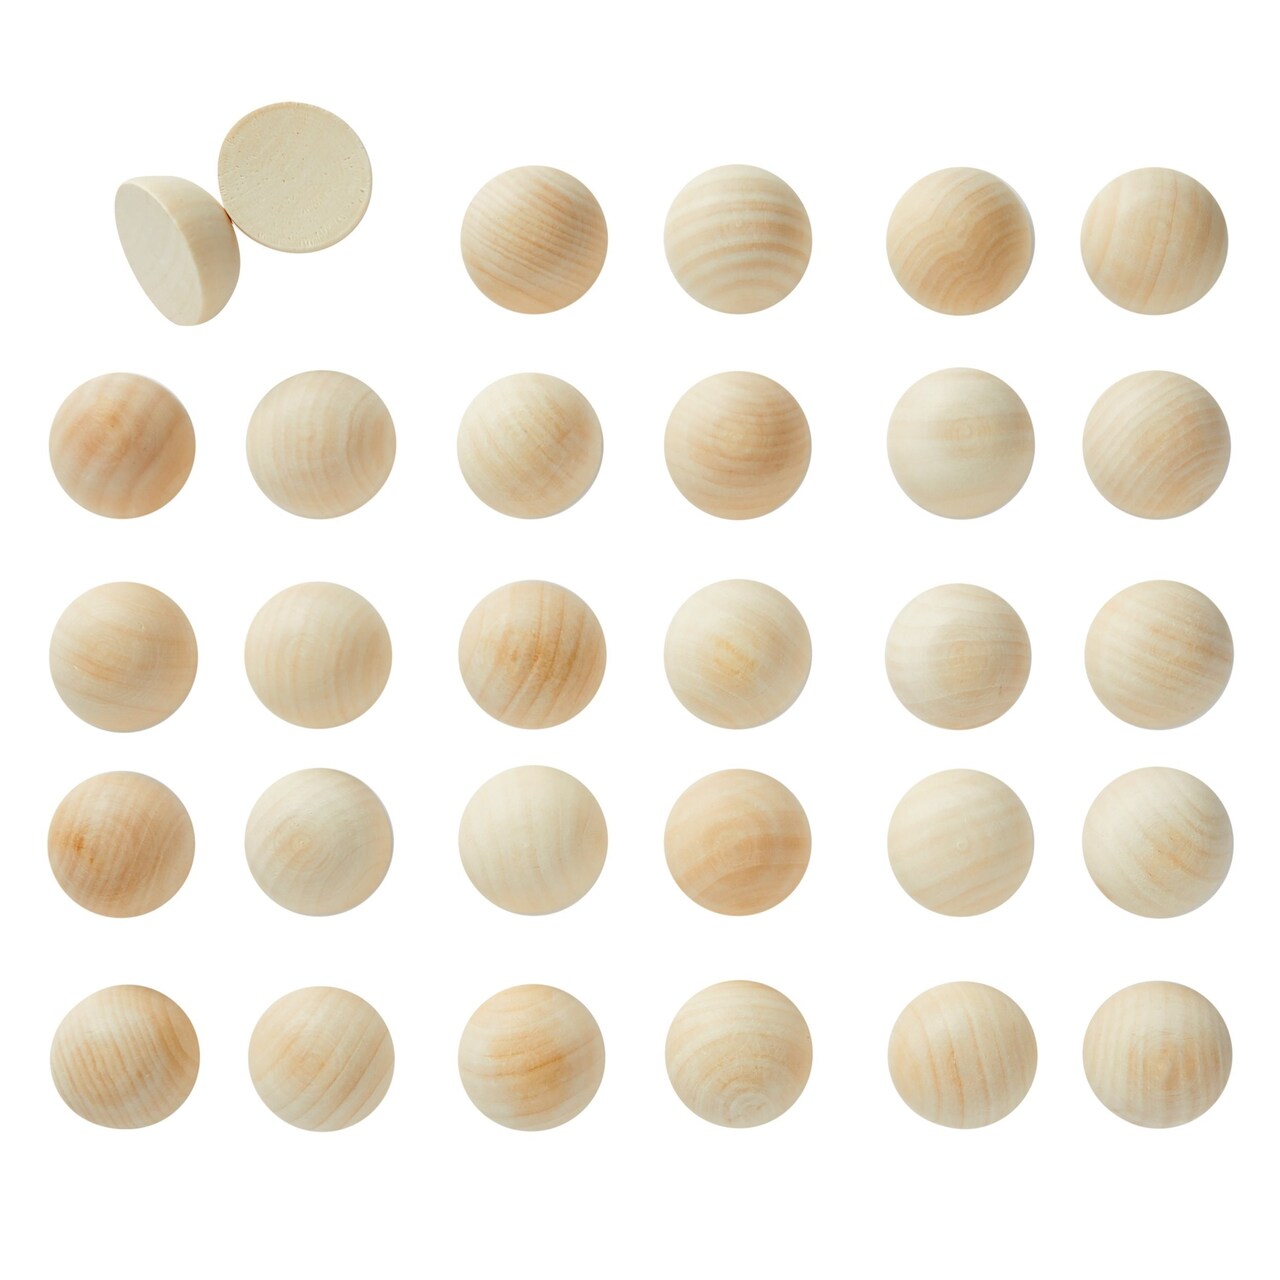 30 Pack Split Wood Balls for Crafts, 1.5-Inch Unfinished Half